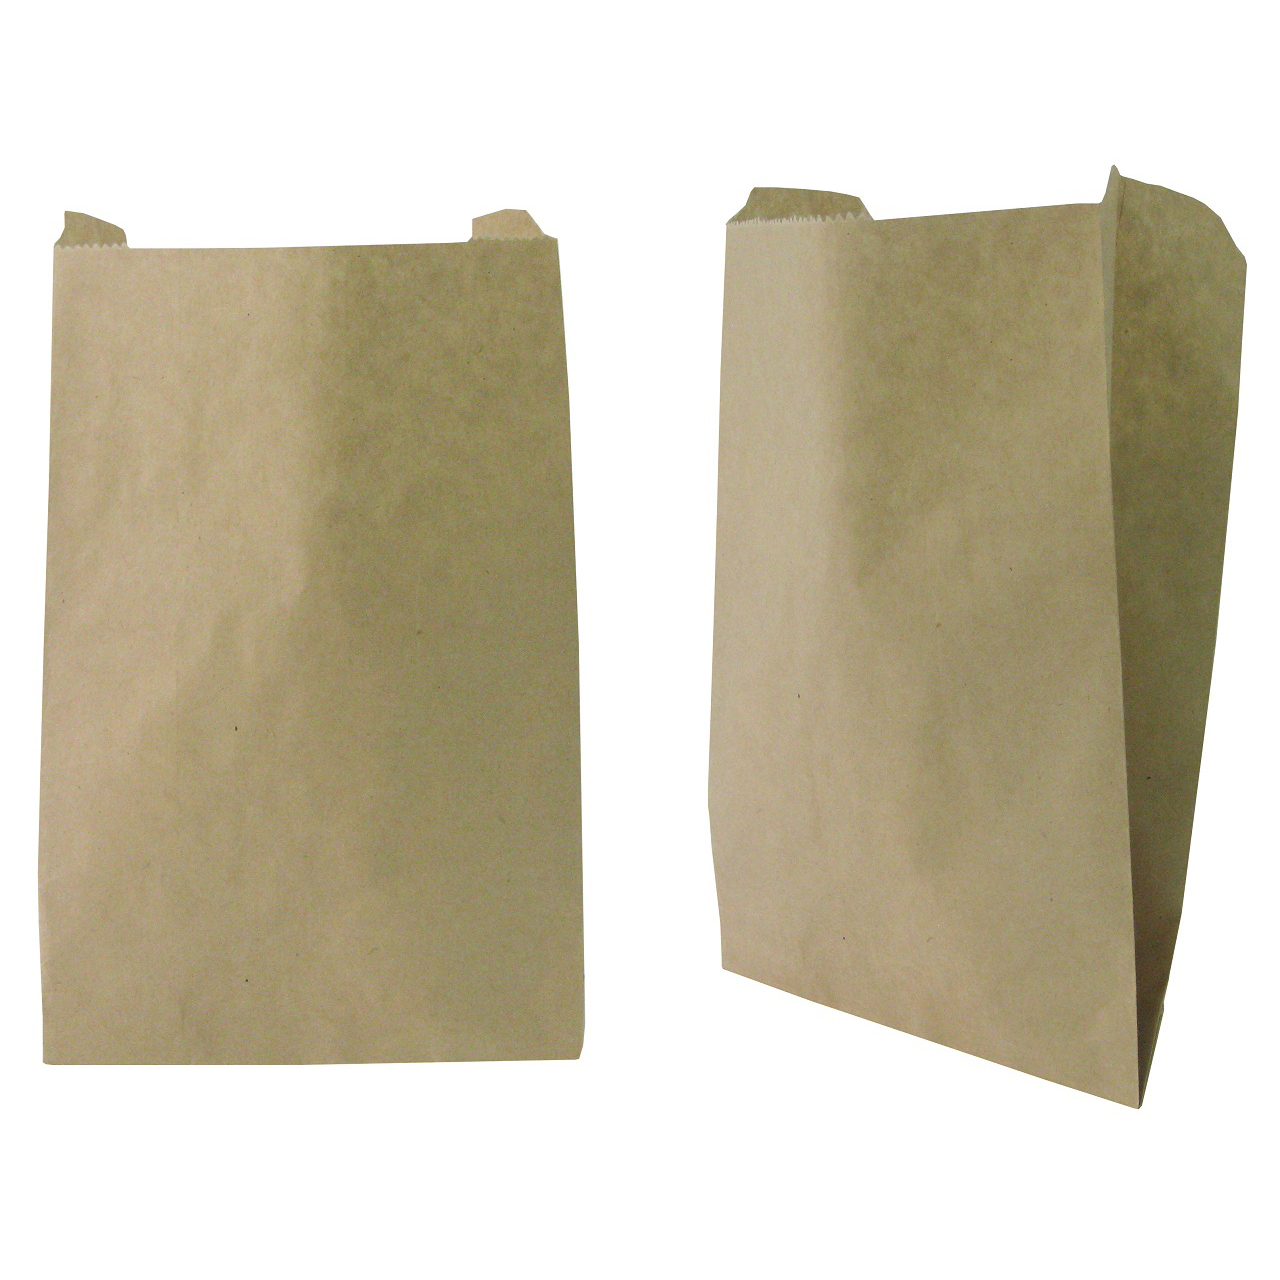 ถุงซองกระดาษขยายข้าง 50 แกรม สีน้ำตาล ขนาด 13x21(+7) cm. (20 ใบ/แพ็ค)